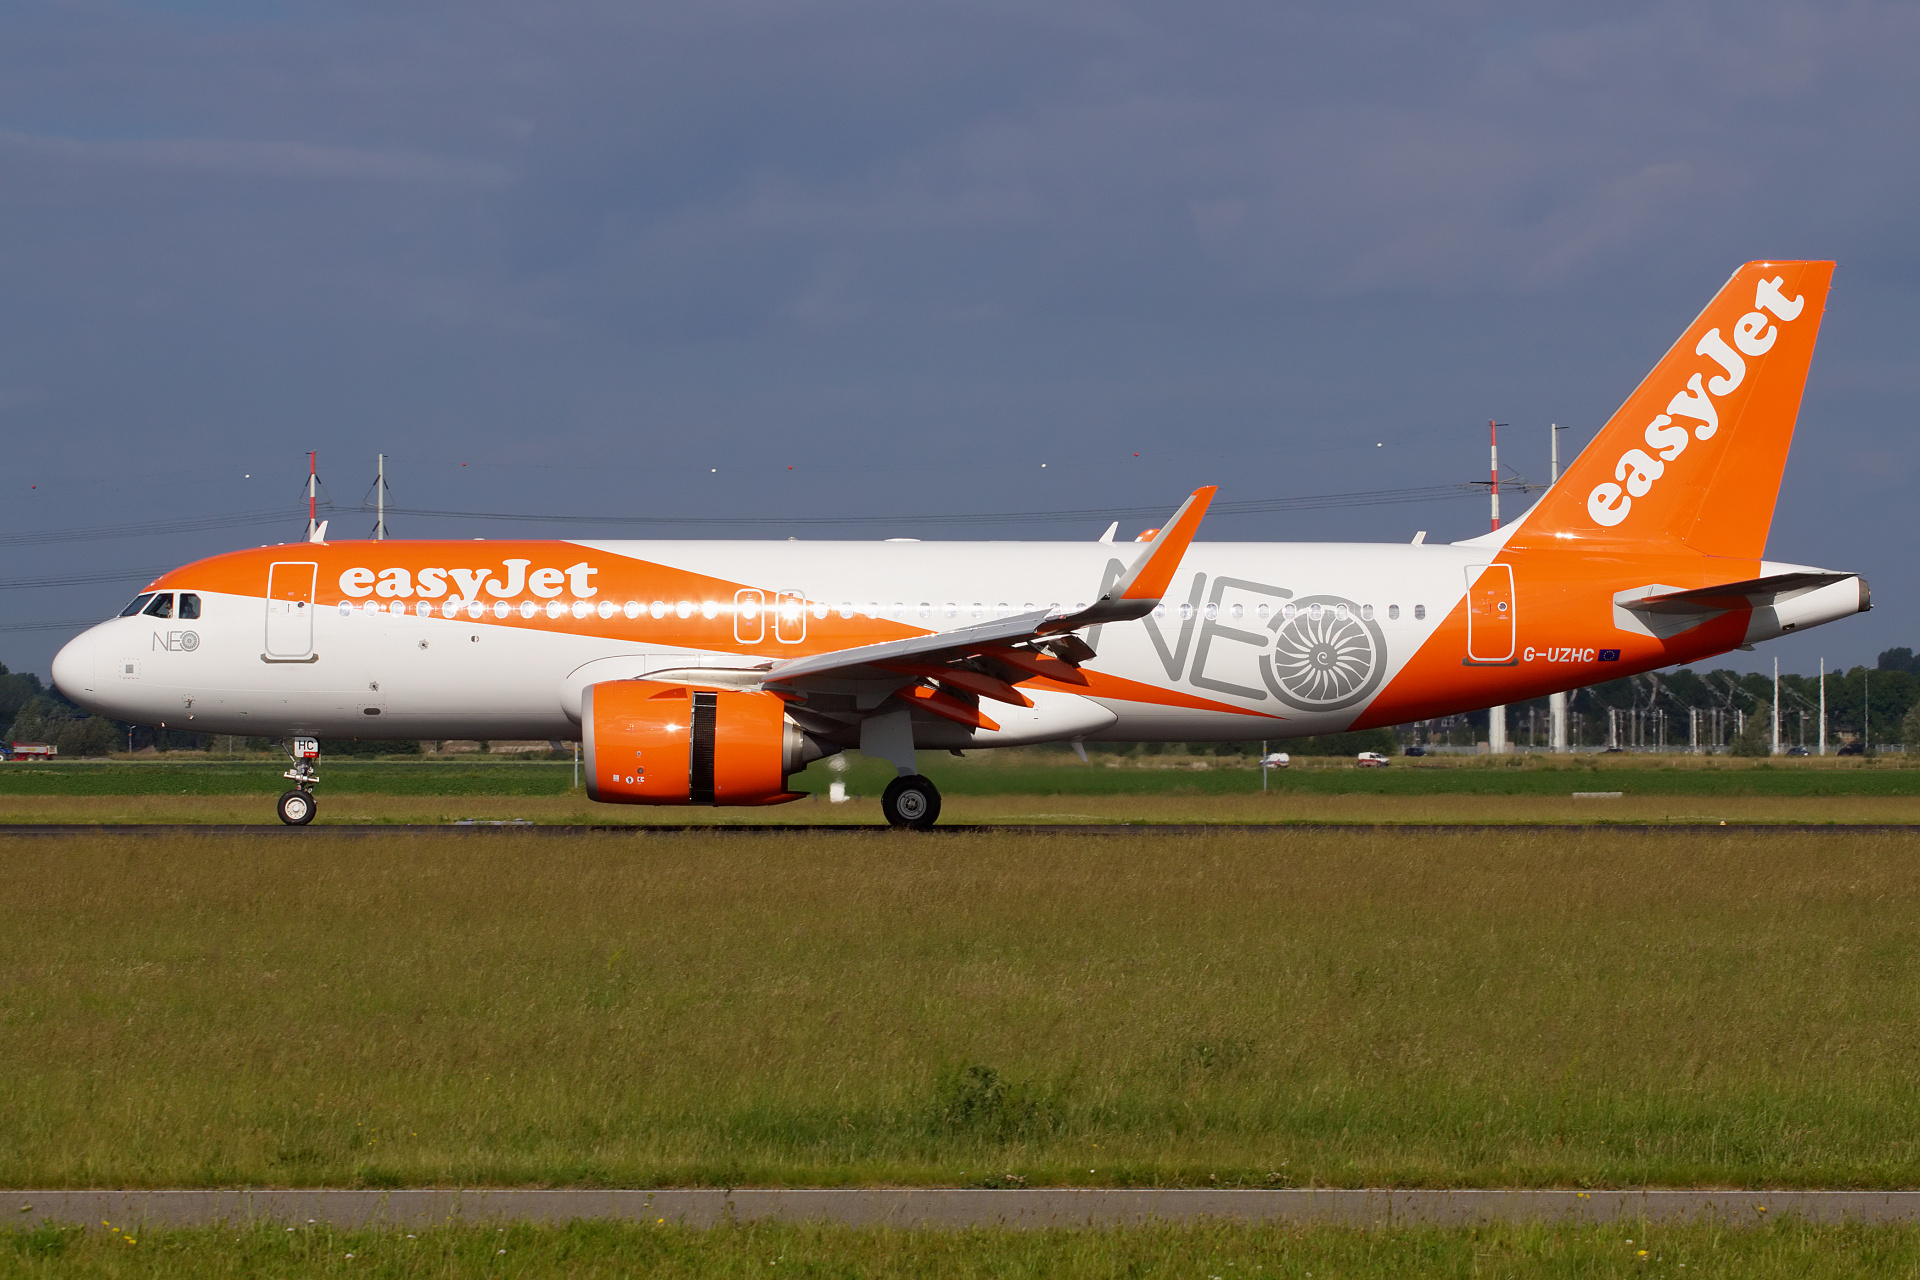 G-UZHC, EasyJet (malowanie NEO) (Samoloty » Spotting na Schiphol » Airbus A320neo)